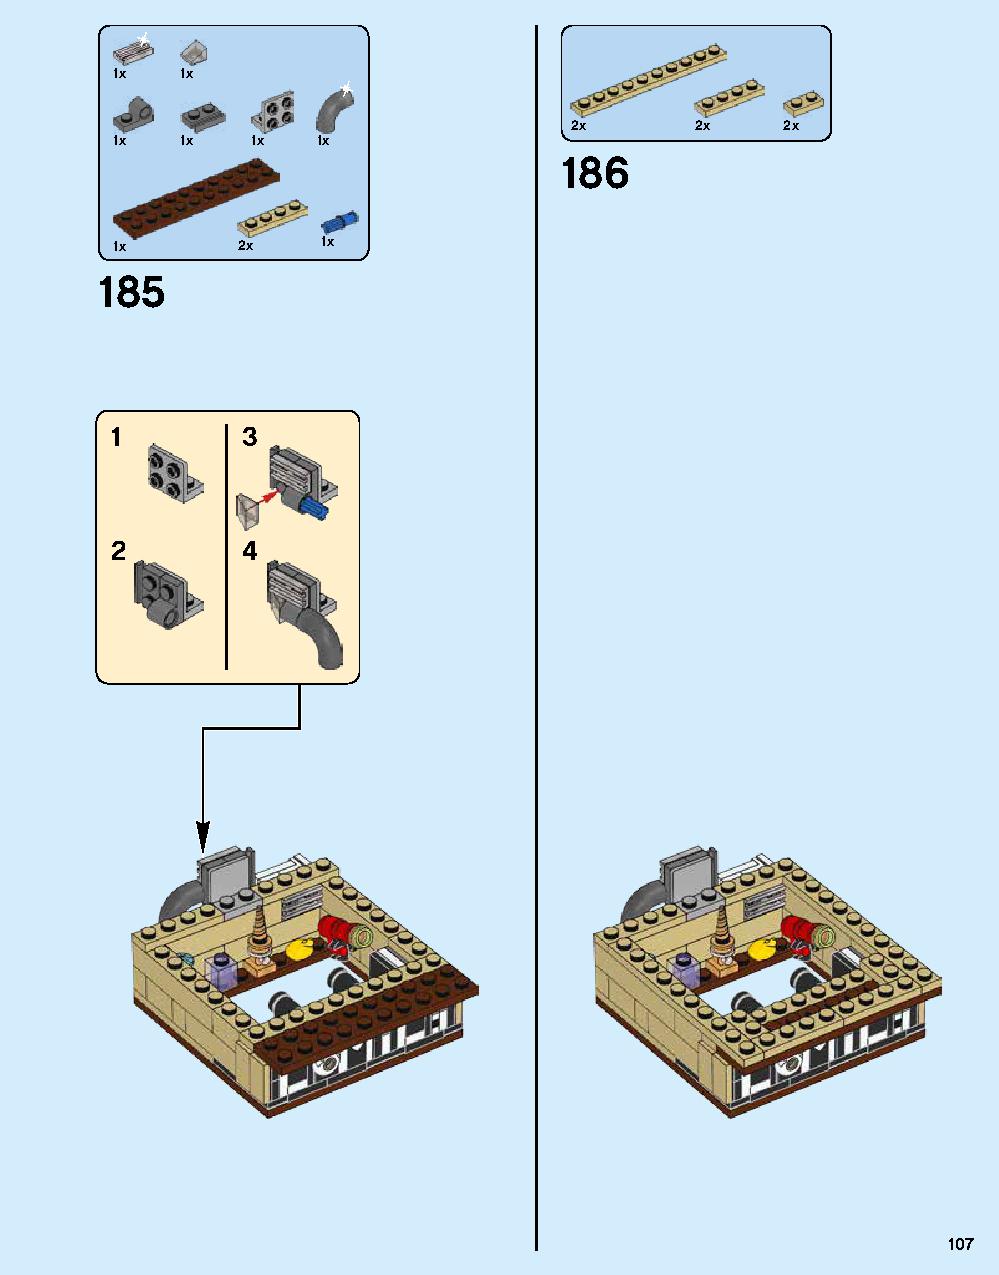 ニンジャゴー シティ 70620 レゴの商品情報 レゴの説明書・組立方法 107 page